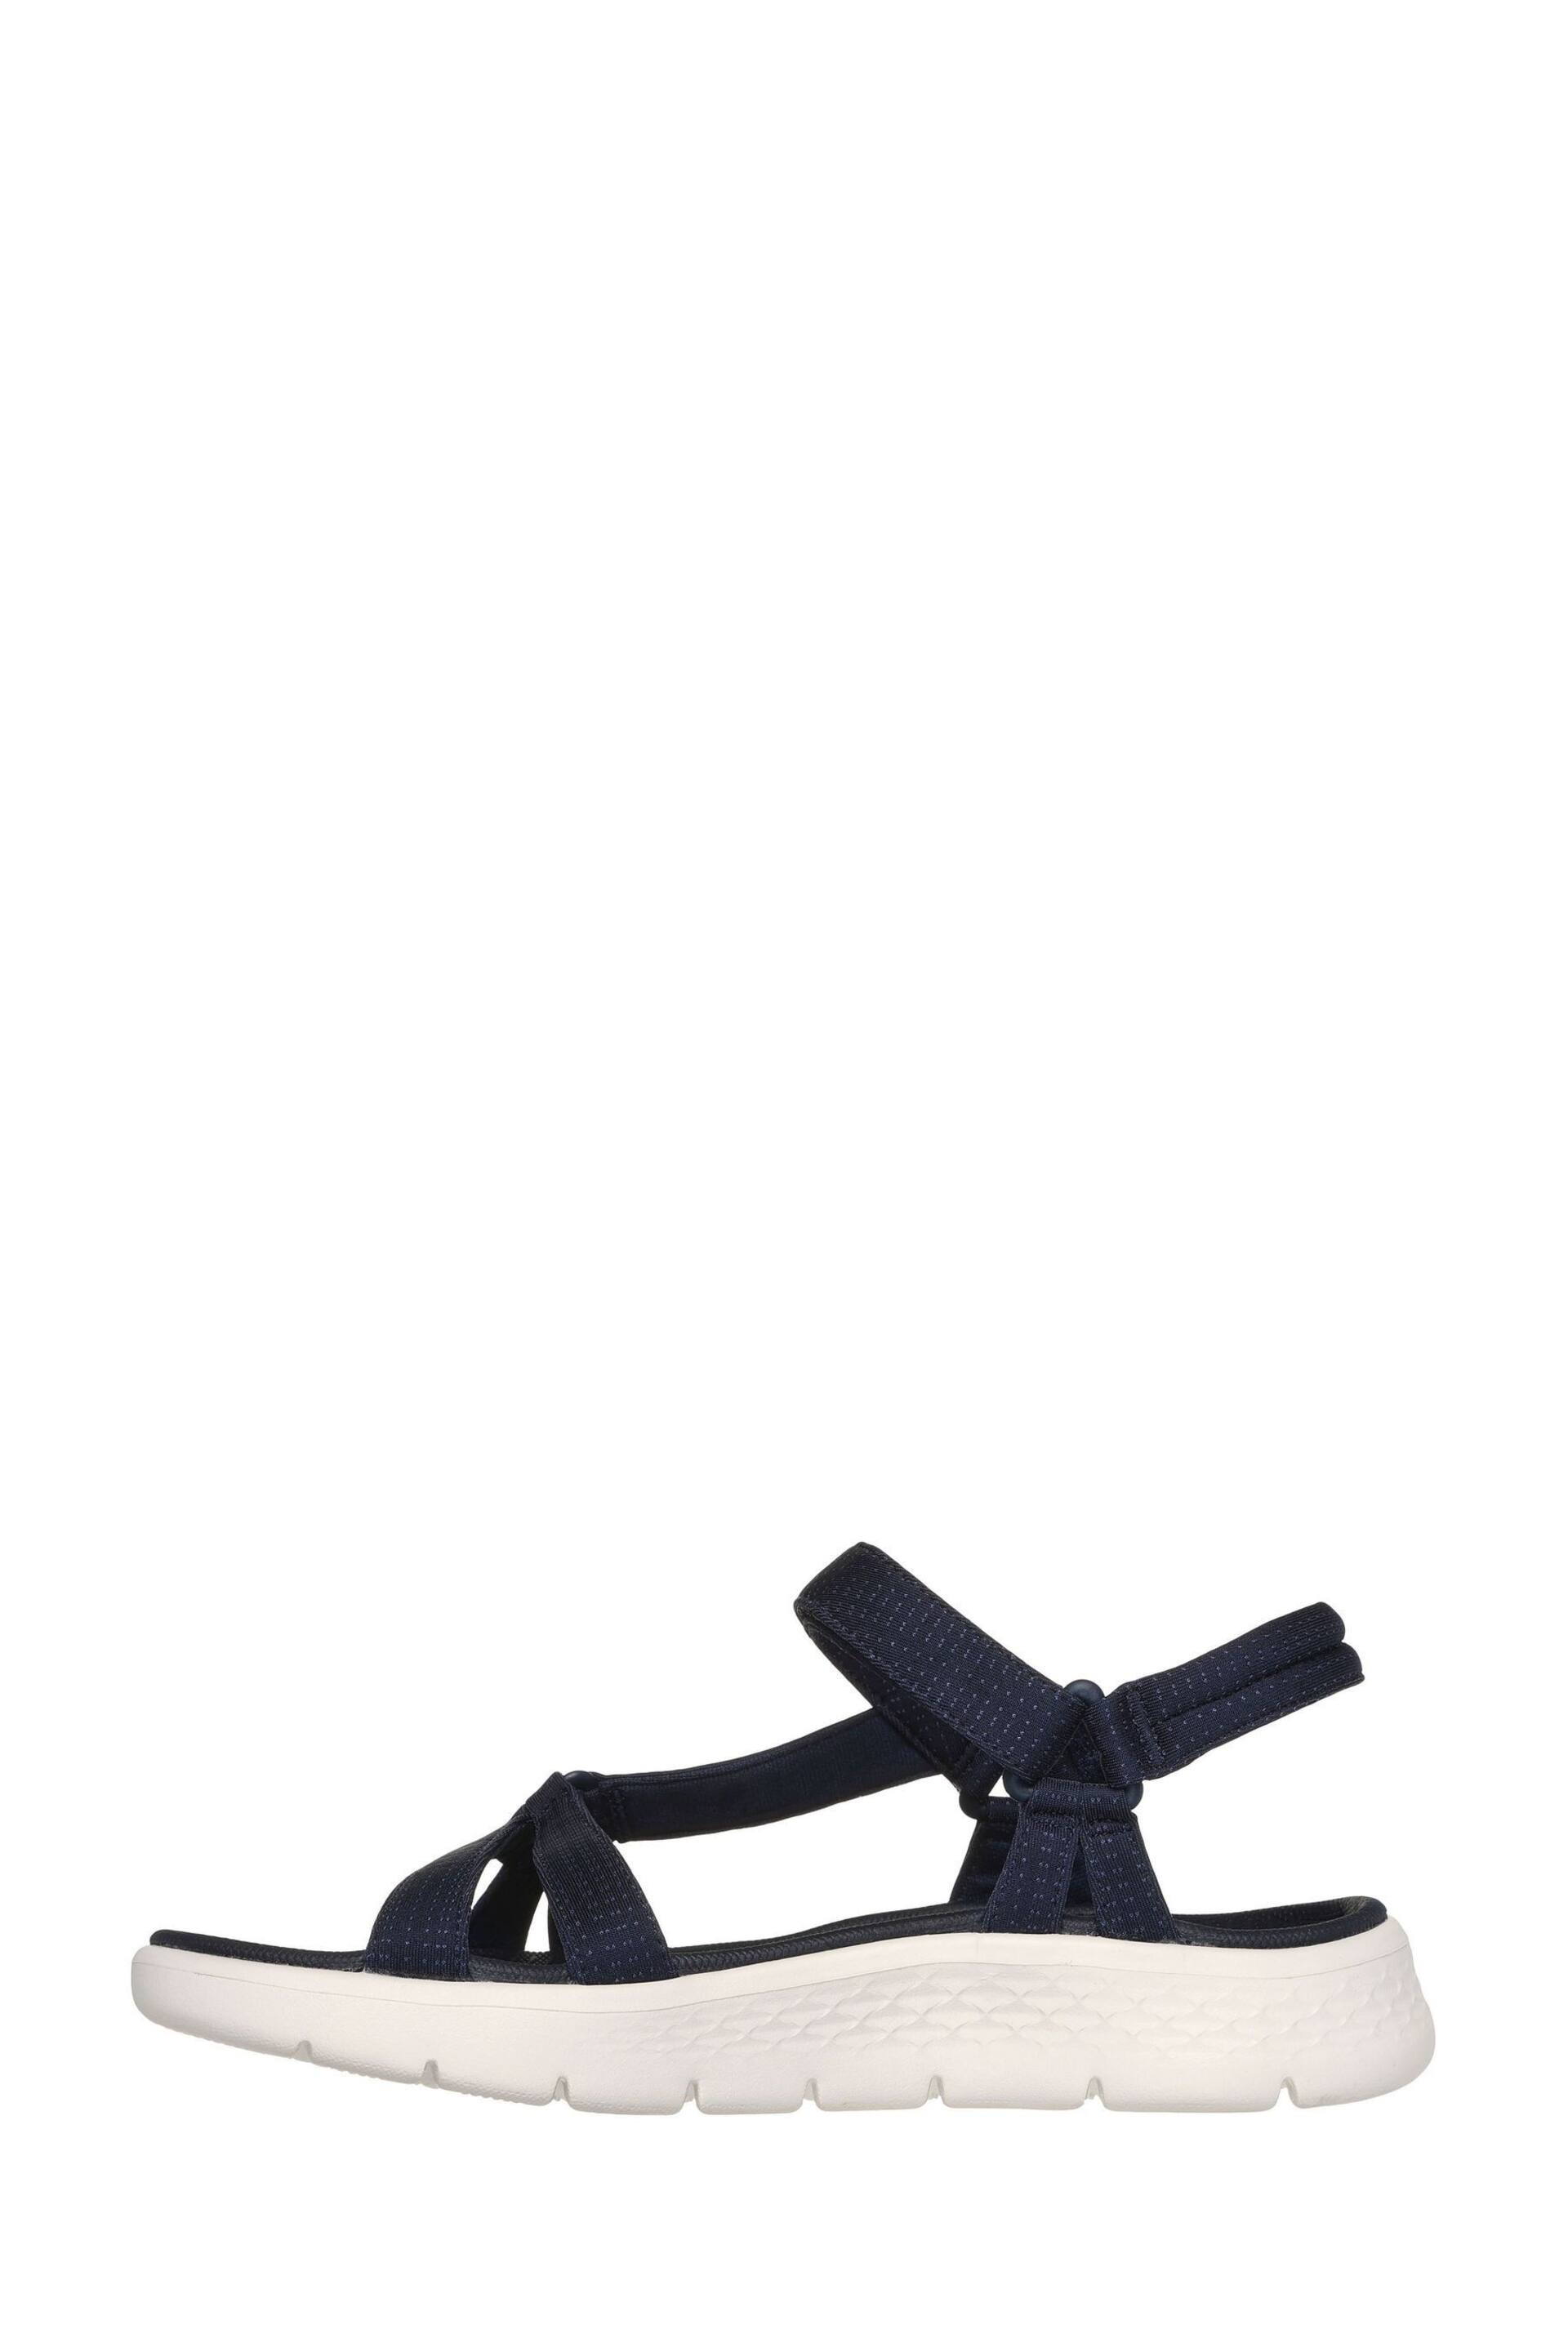 Skechers Blue Go Walk Flex Sublime-X Sandals - Image 1 of 5